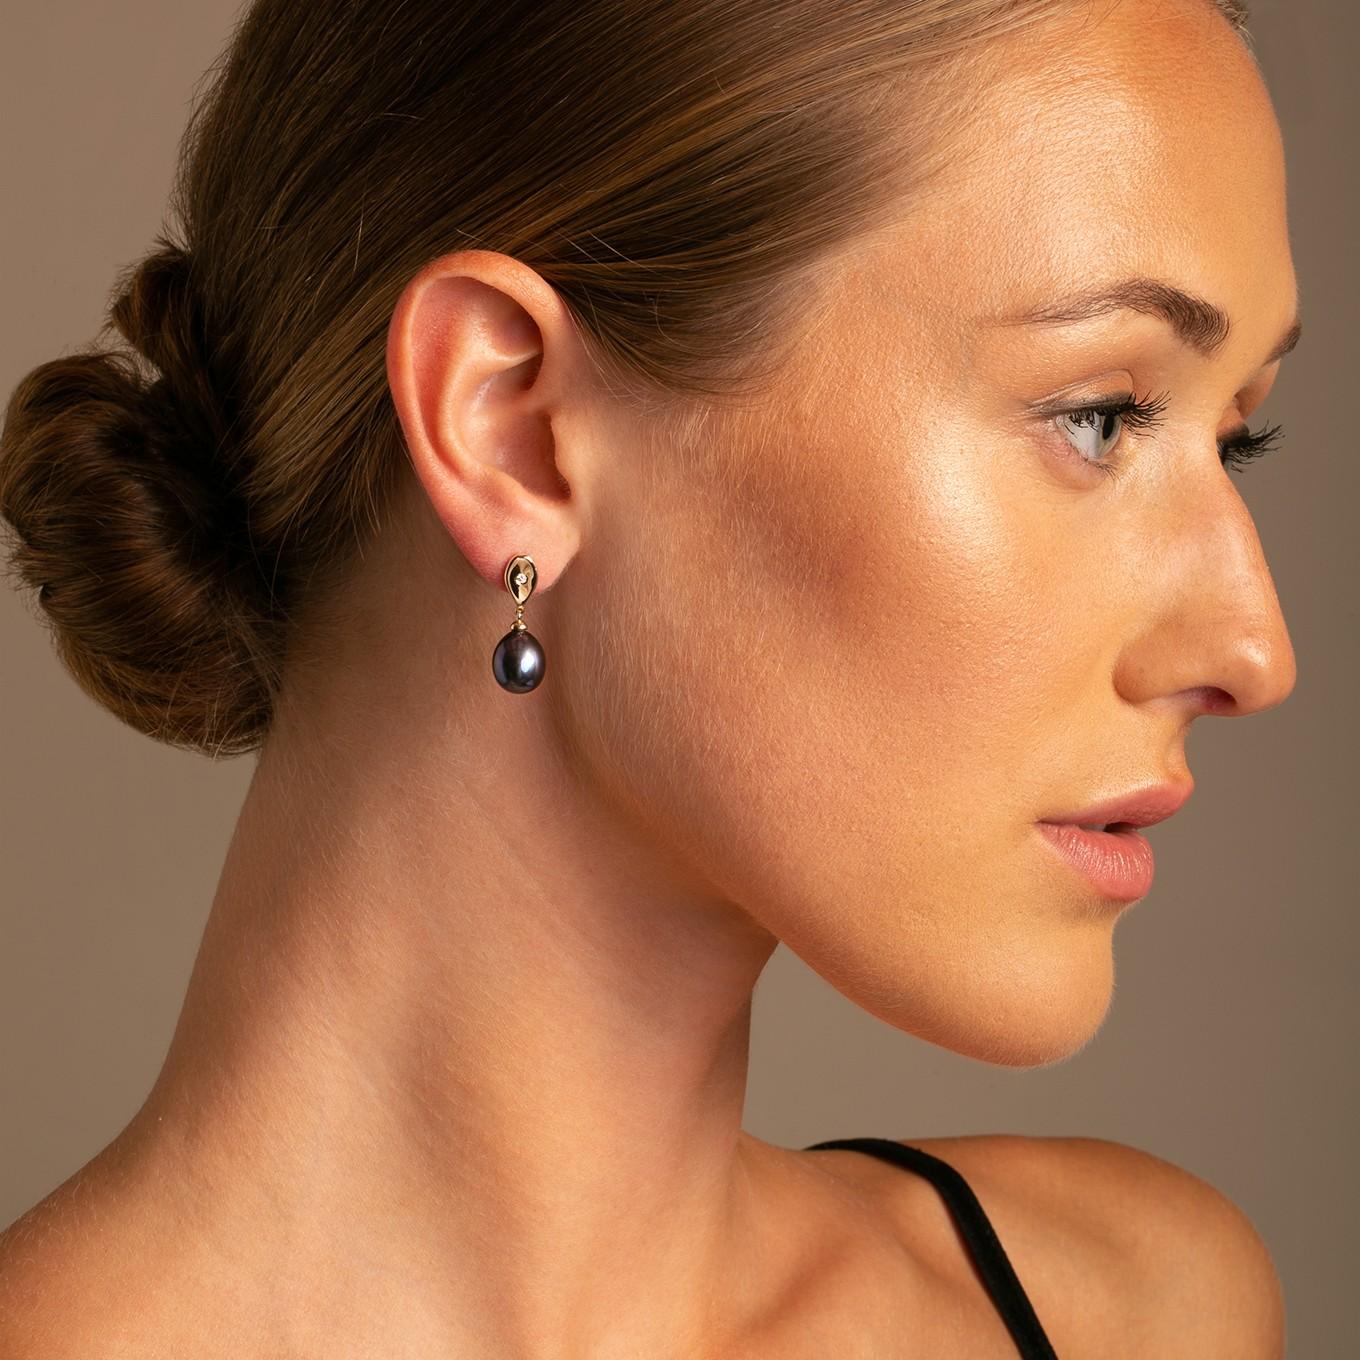 Die Teardrop-Ohrringe aus 14 Karat Weißgold mit Diamanten und pfauengrünen Perlen sind eine Mischung aus modernem Stil und klassischem Charme.

Jeder Ohrring ist mit einem raffinierten Teardrop-Design aus 14 Karat Weißgold versehen, das durch einen